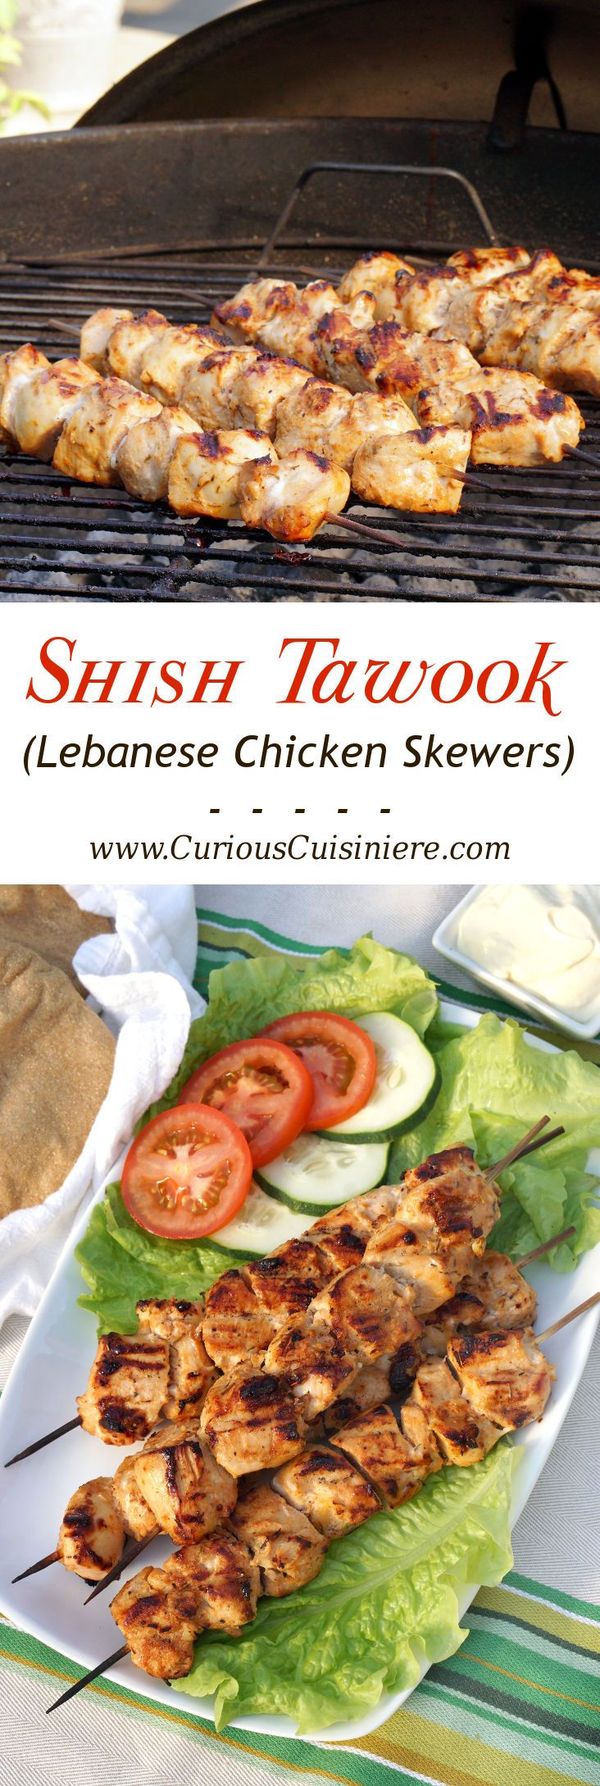 Shish Tawook (Lebanese Chicken Skewers